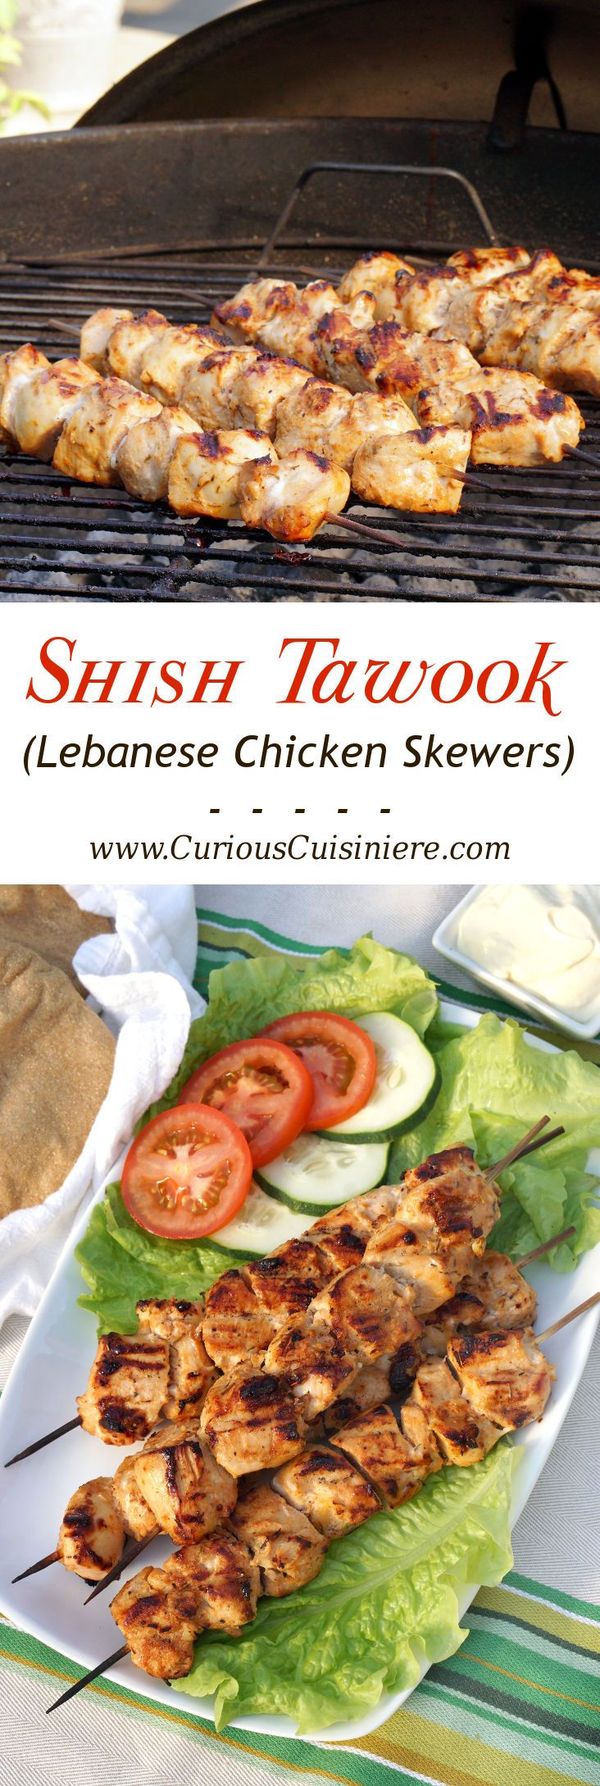 Shish Tawook (Lebanese Chicken Skewers